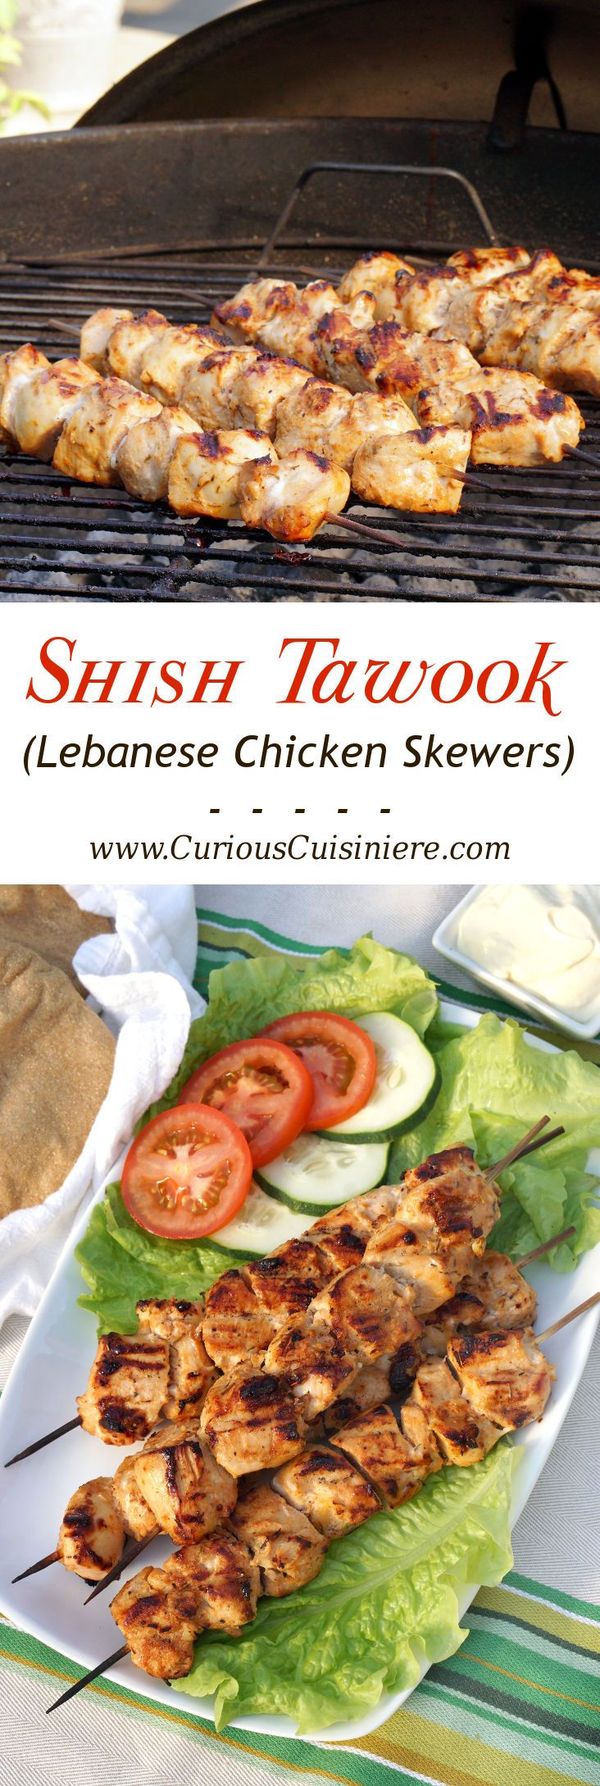 Shish Tawook (Lebanese Chicken Skewers